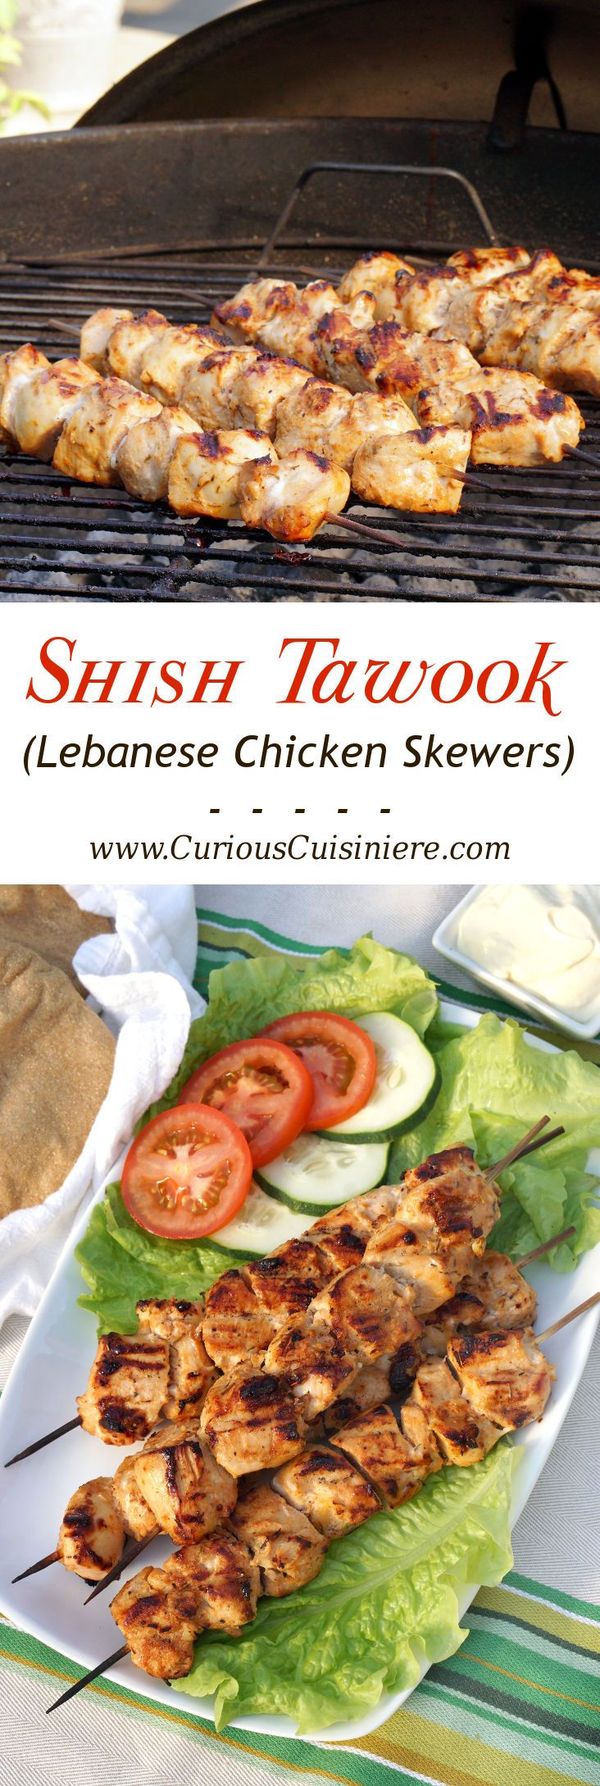 Shish Tawook (Lebanese Chicken Skewers